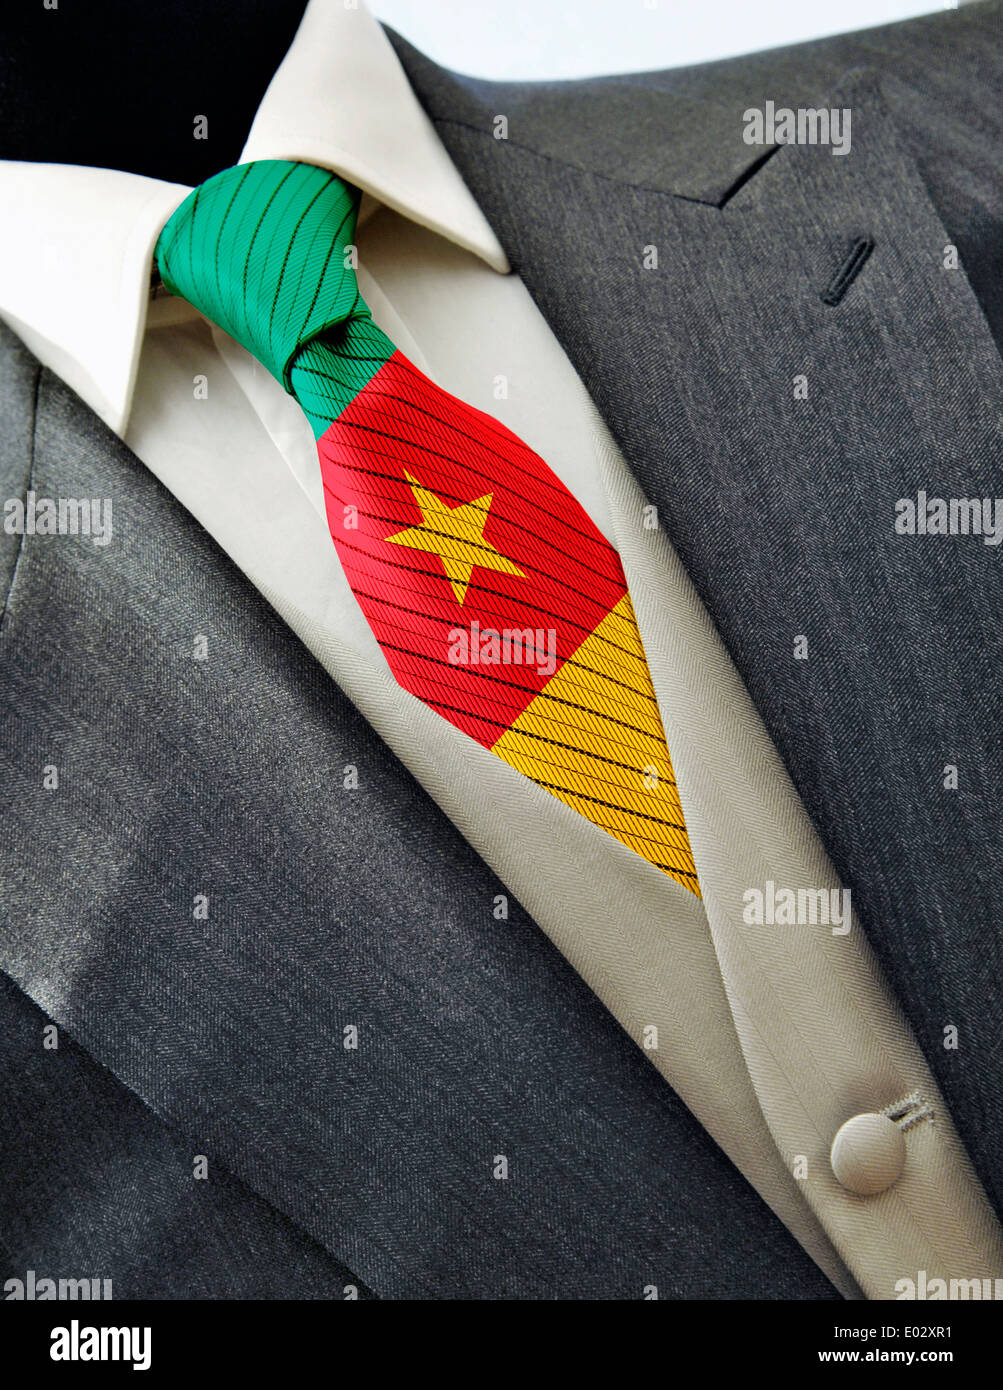 Robe de mariage élégant avec drapeau Cameroun sur la cravate Photo Stock -  Alamy